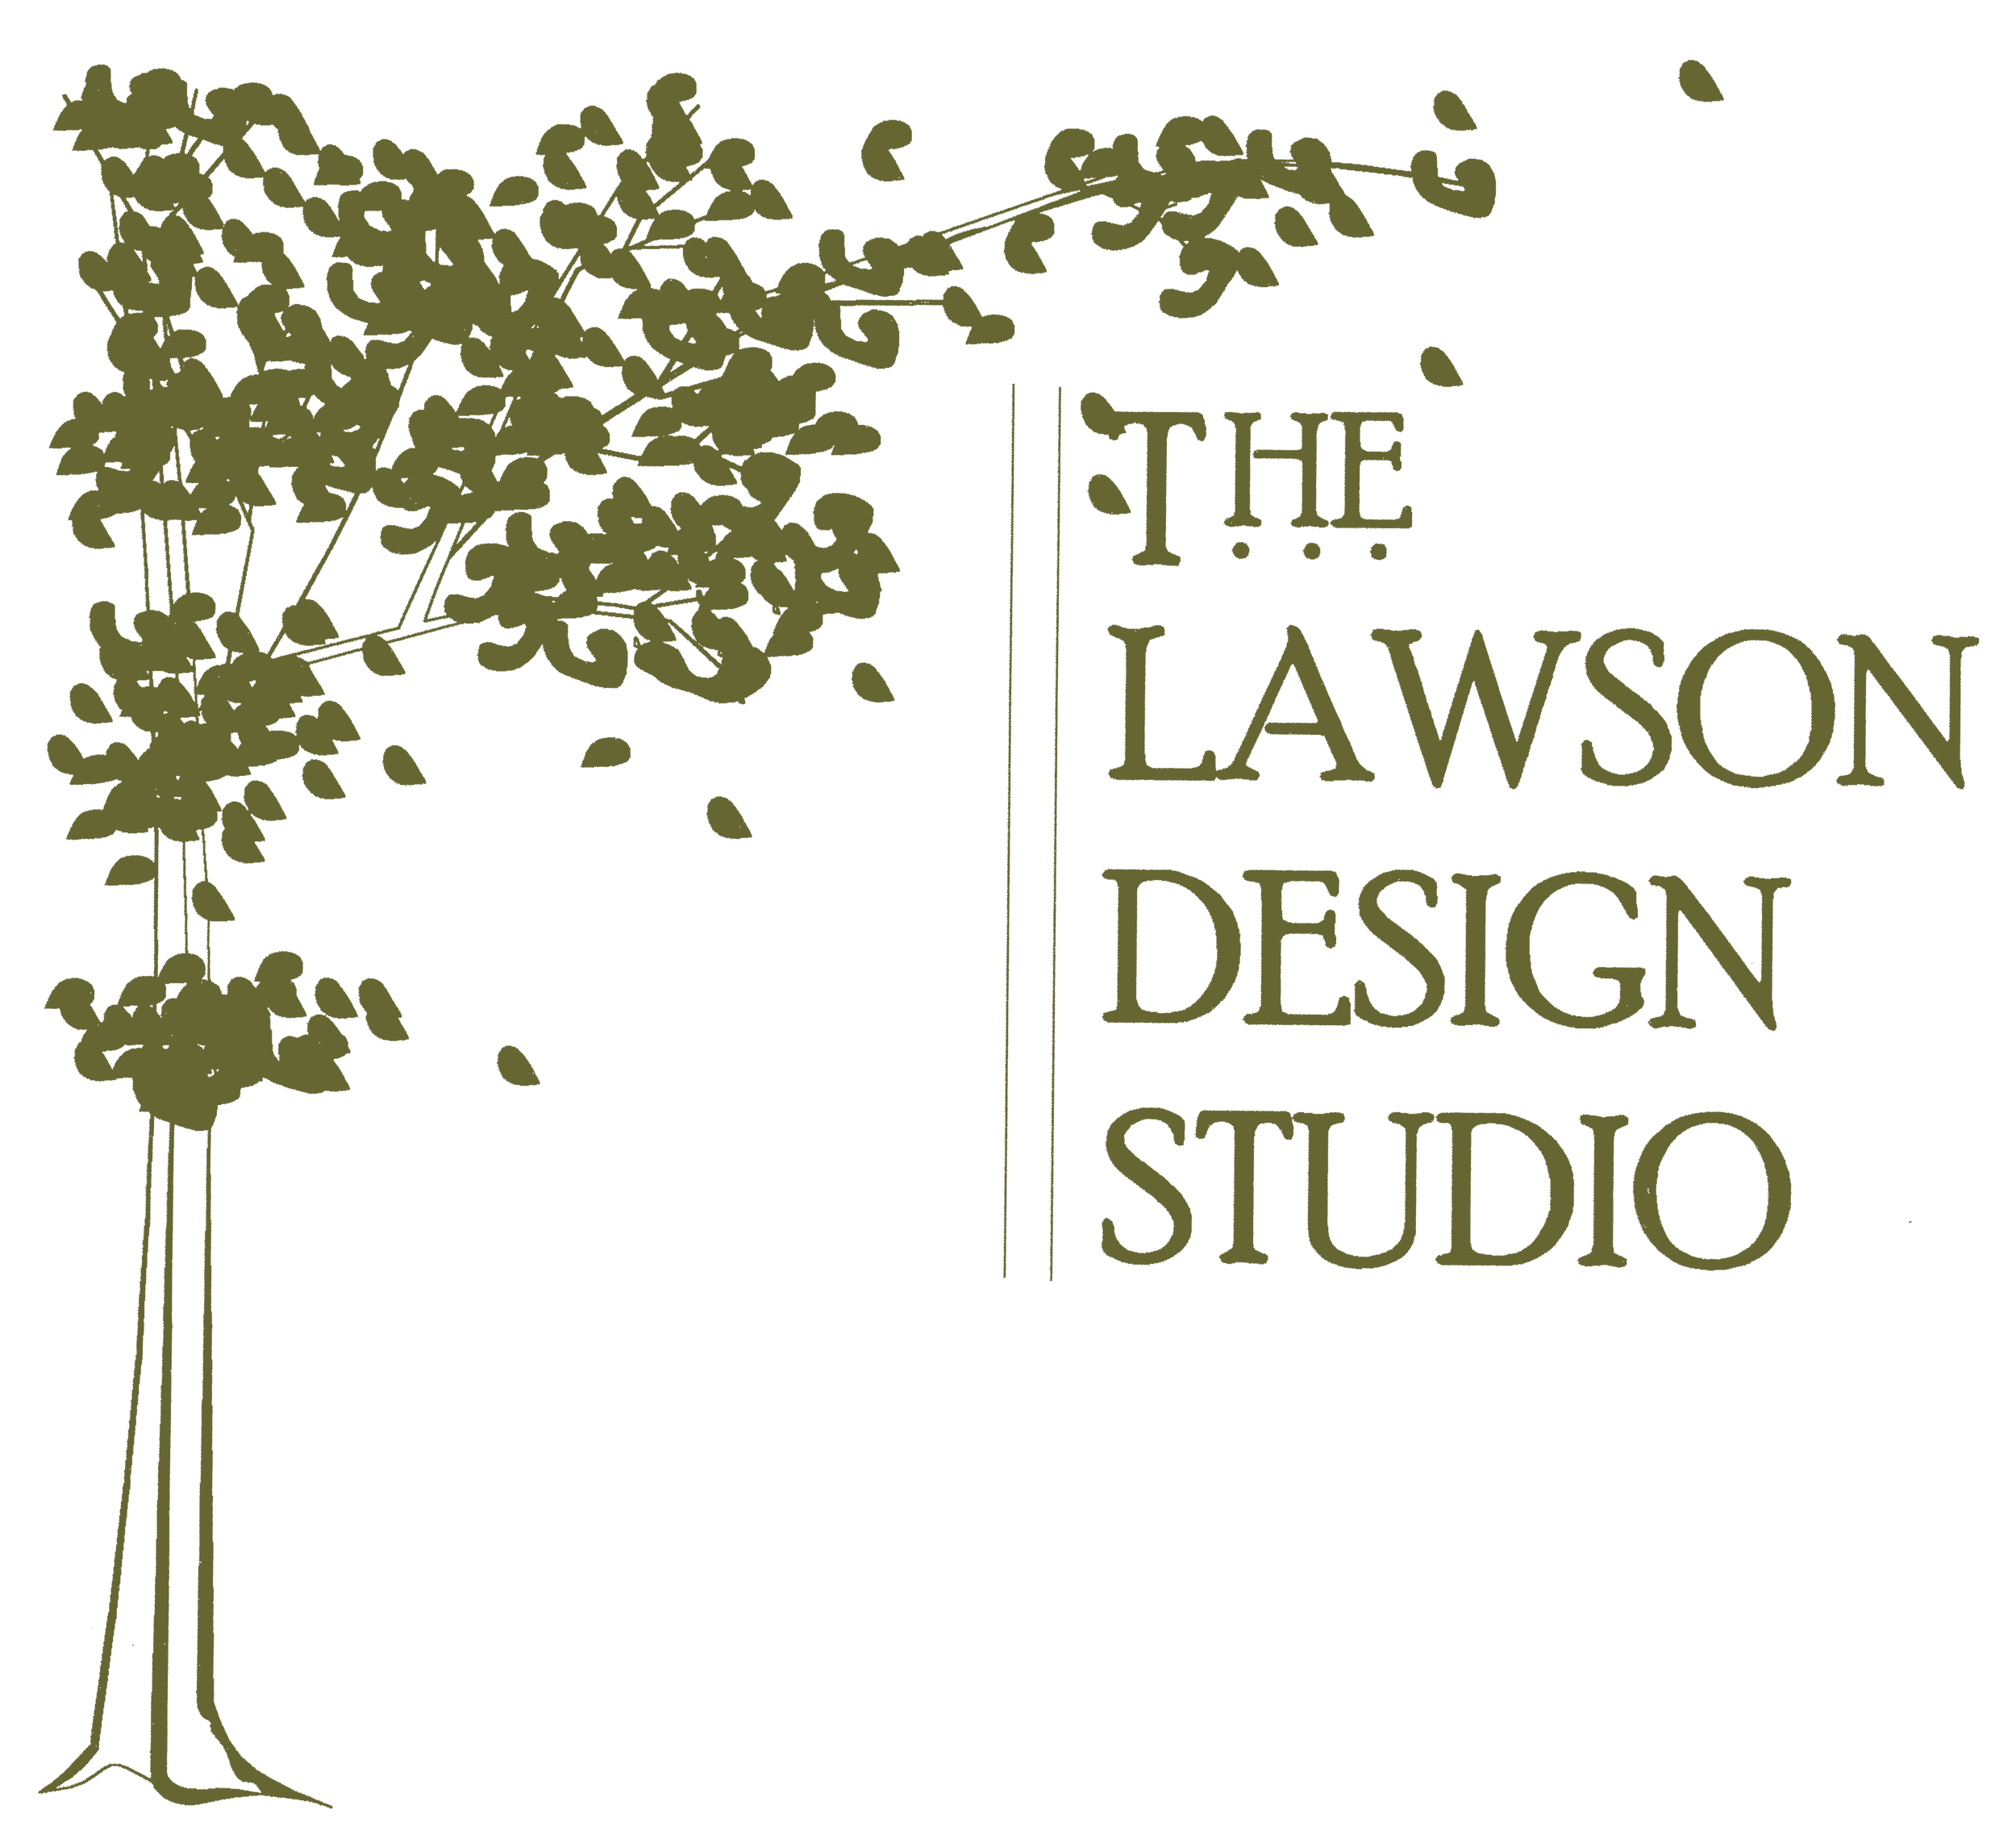 The Lawson Design Studio